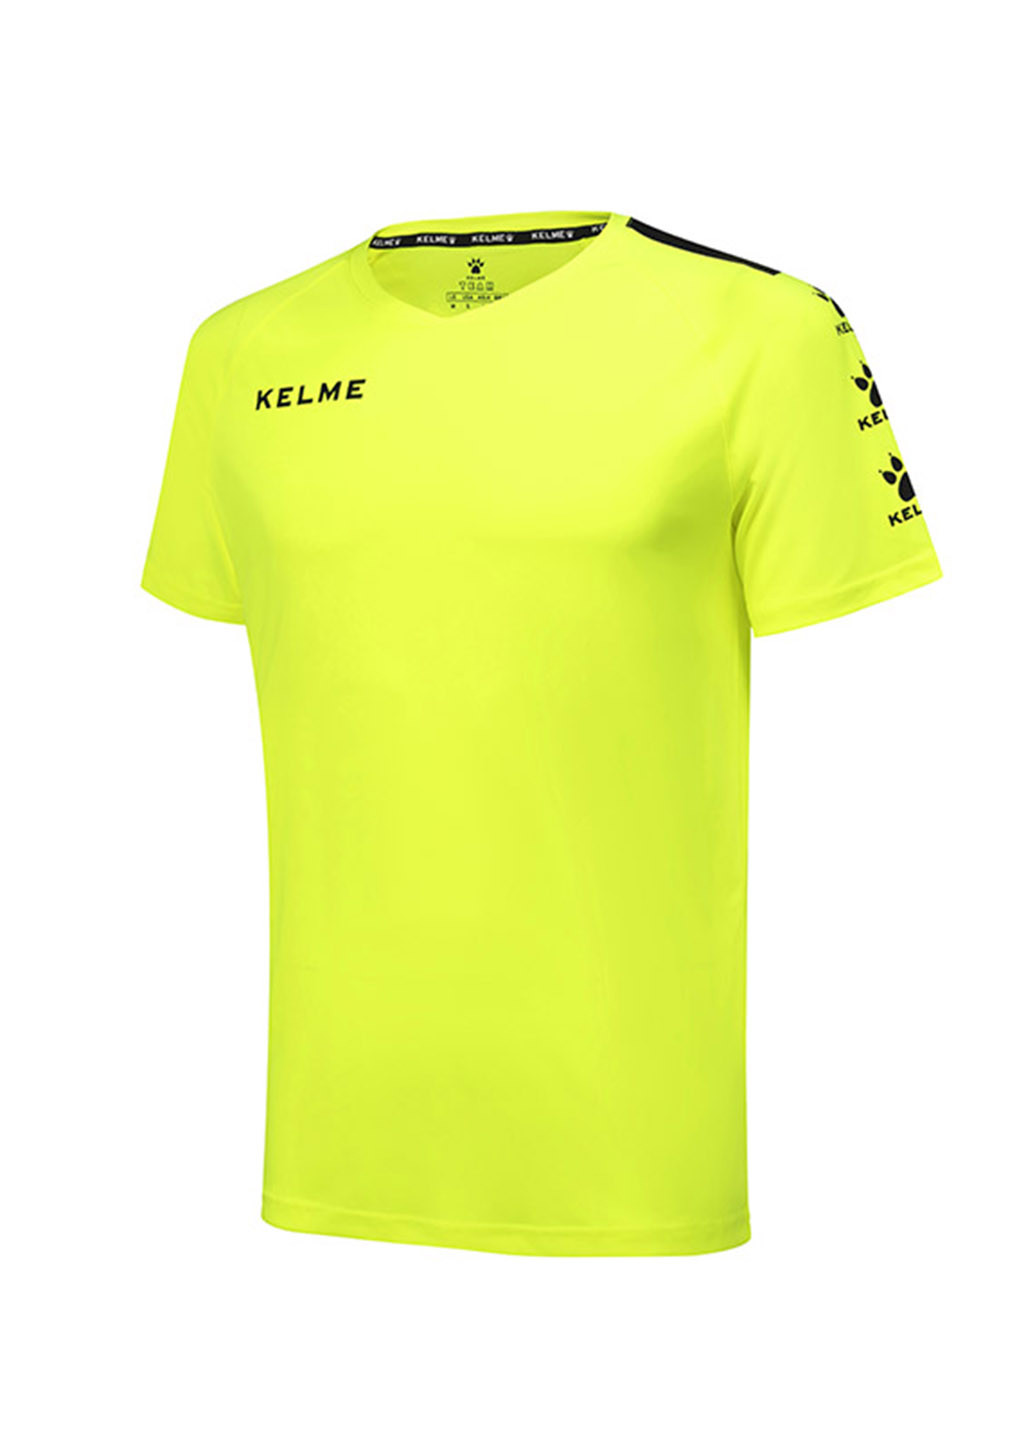 Кислотно-зеленая футболка Kelme